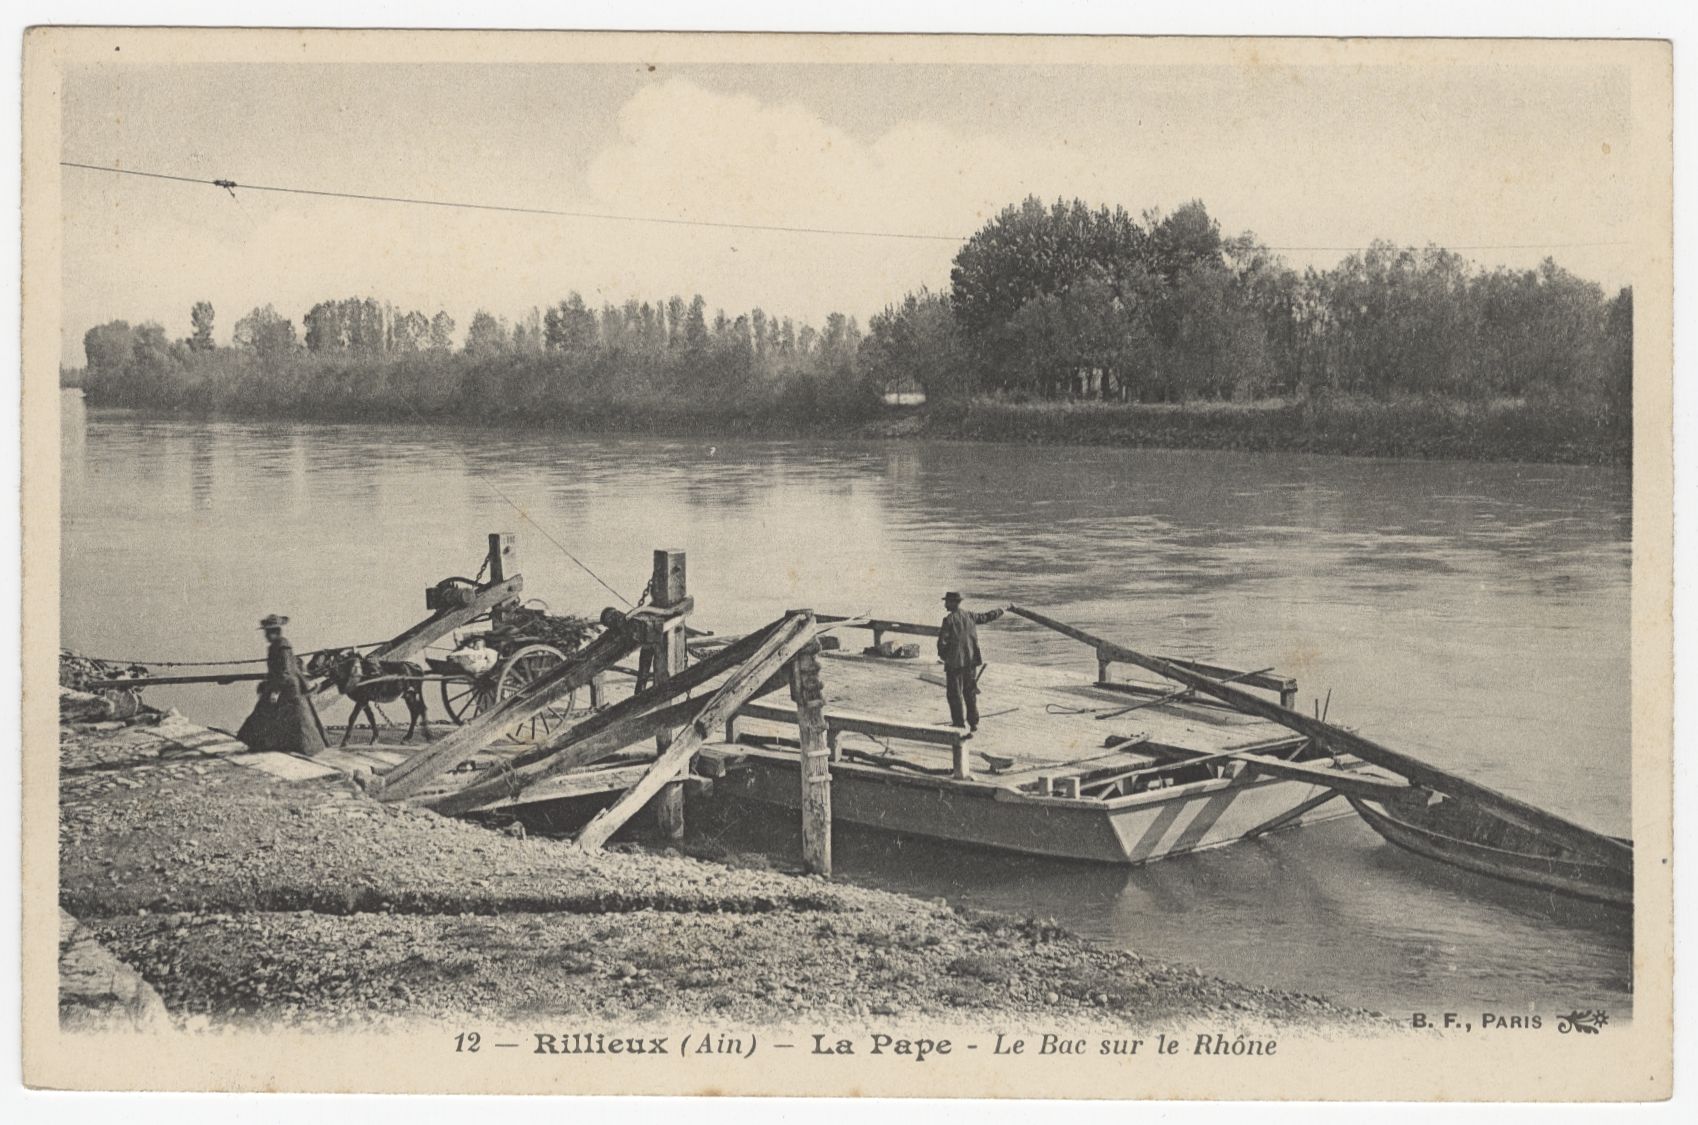 La Pape. Le bac sur le Rhône (Rillieux, Ain) : carte postale (vers 1910, cote : 4FI/3351)